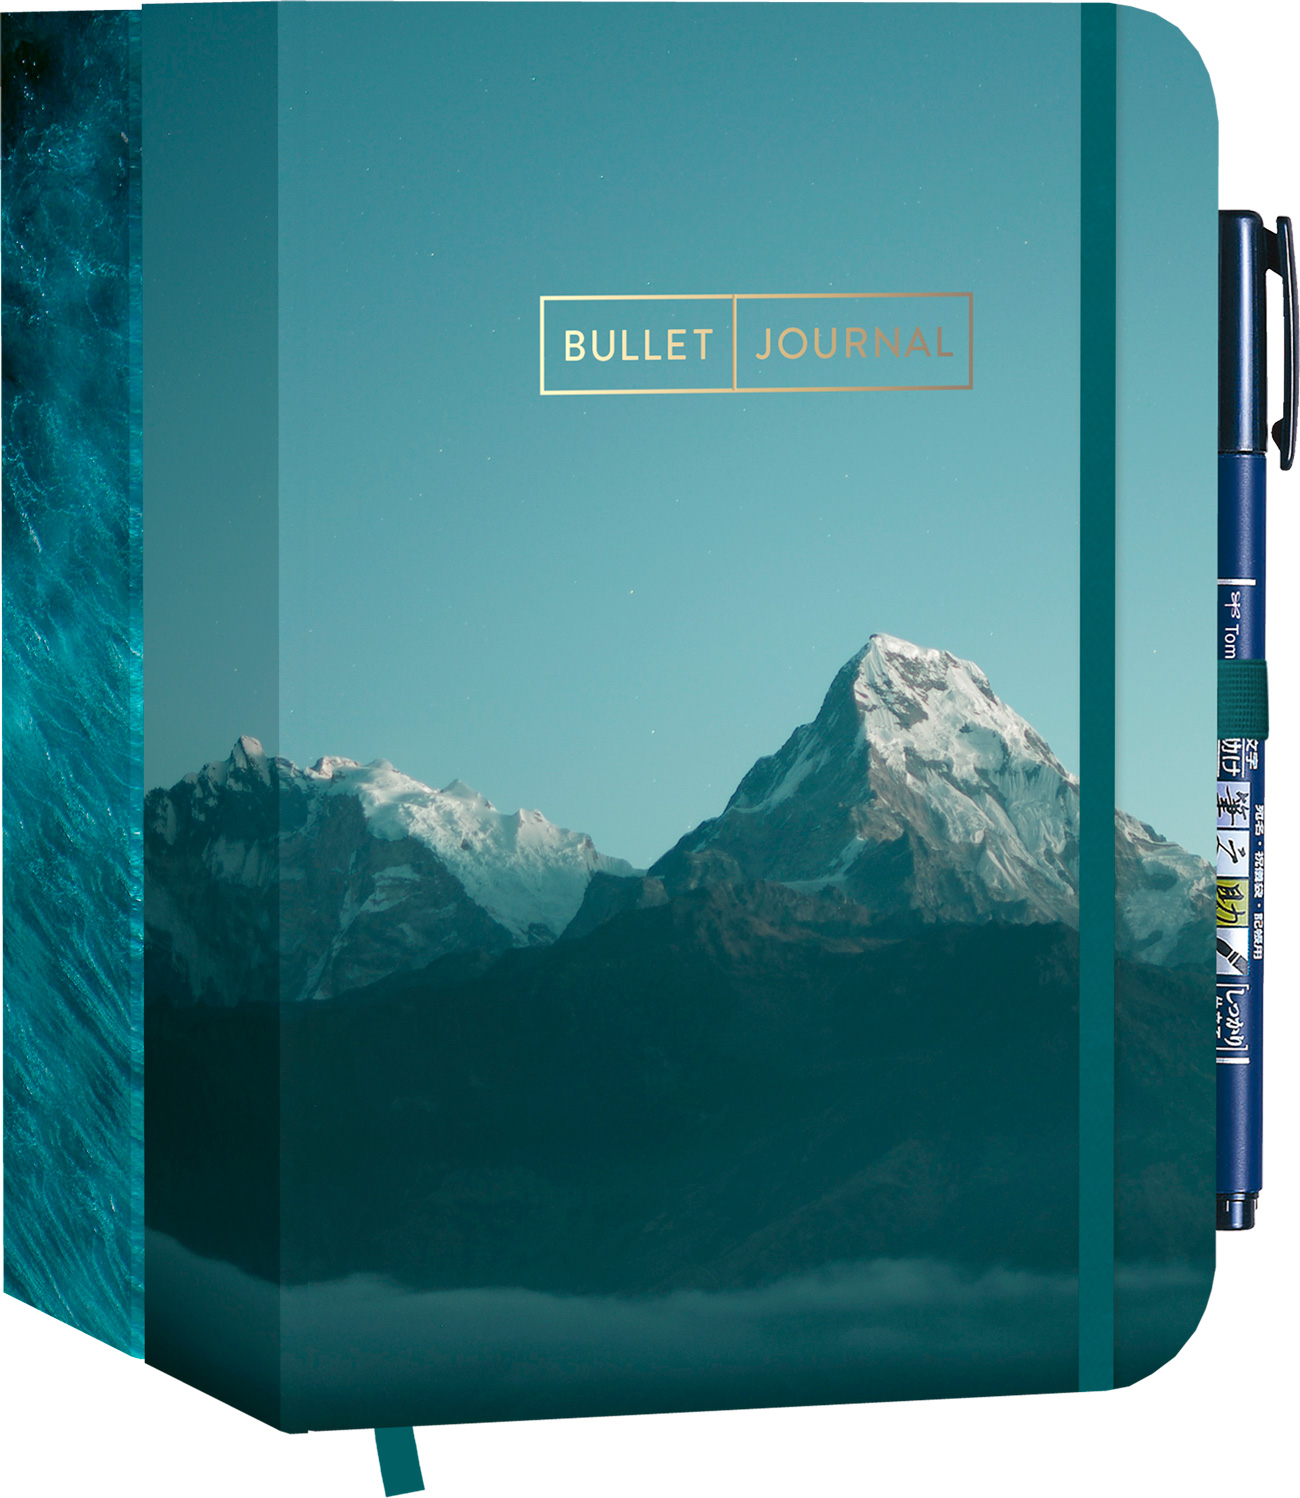 Pocket Bullet Journals „Nature calling“ – Zwei Journals zum Preis von einem mit Original Tombow Brush Pen Fudenosuke in schwarz